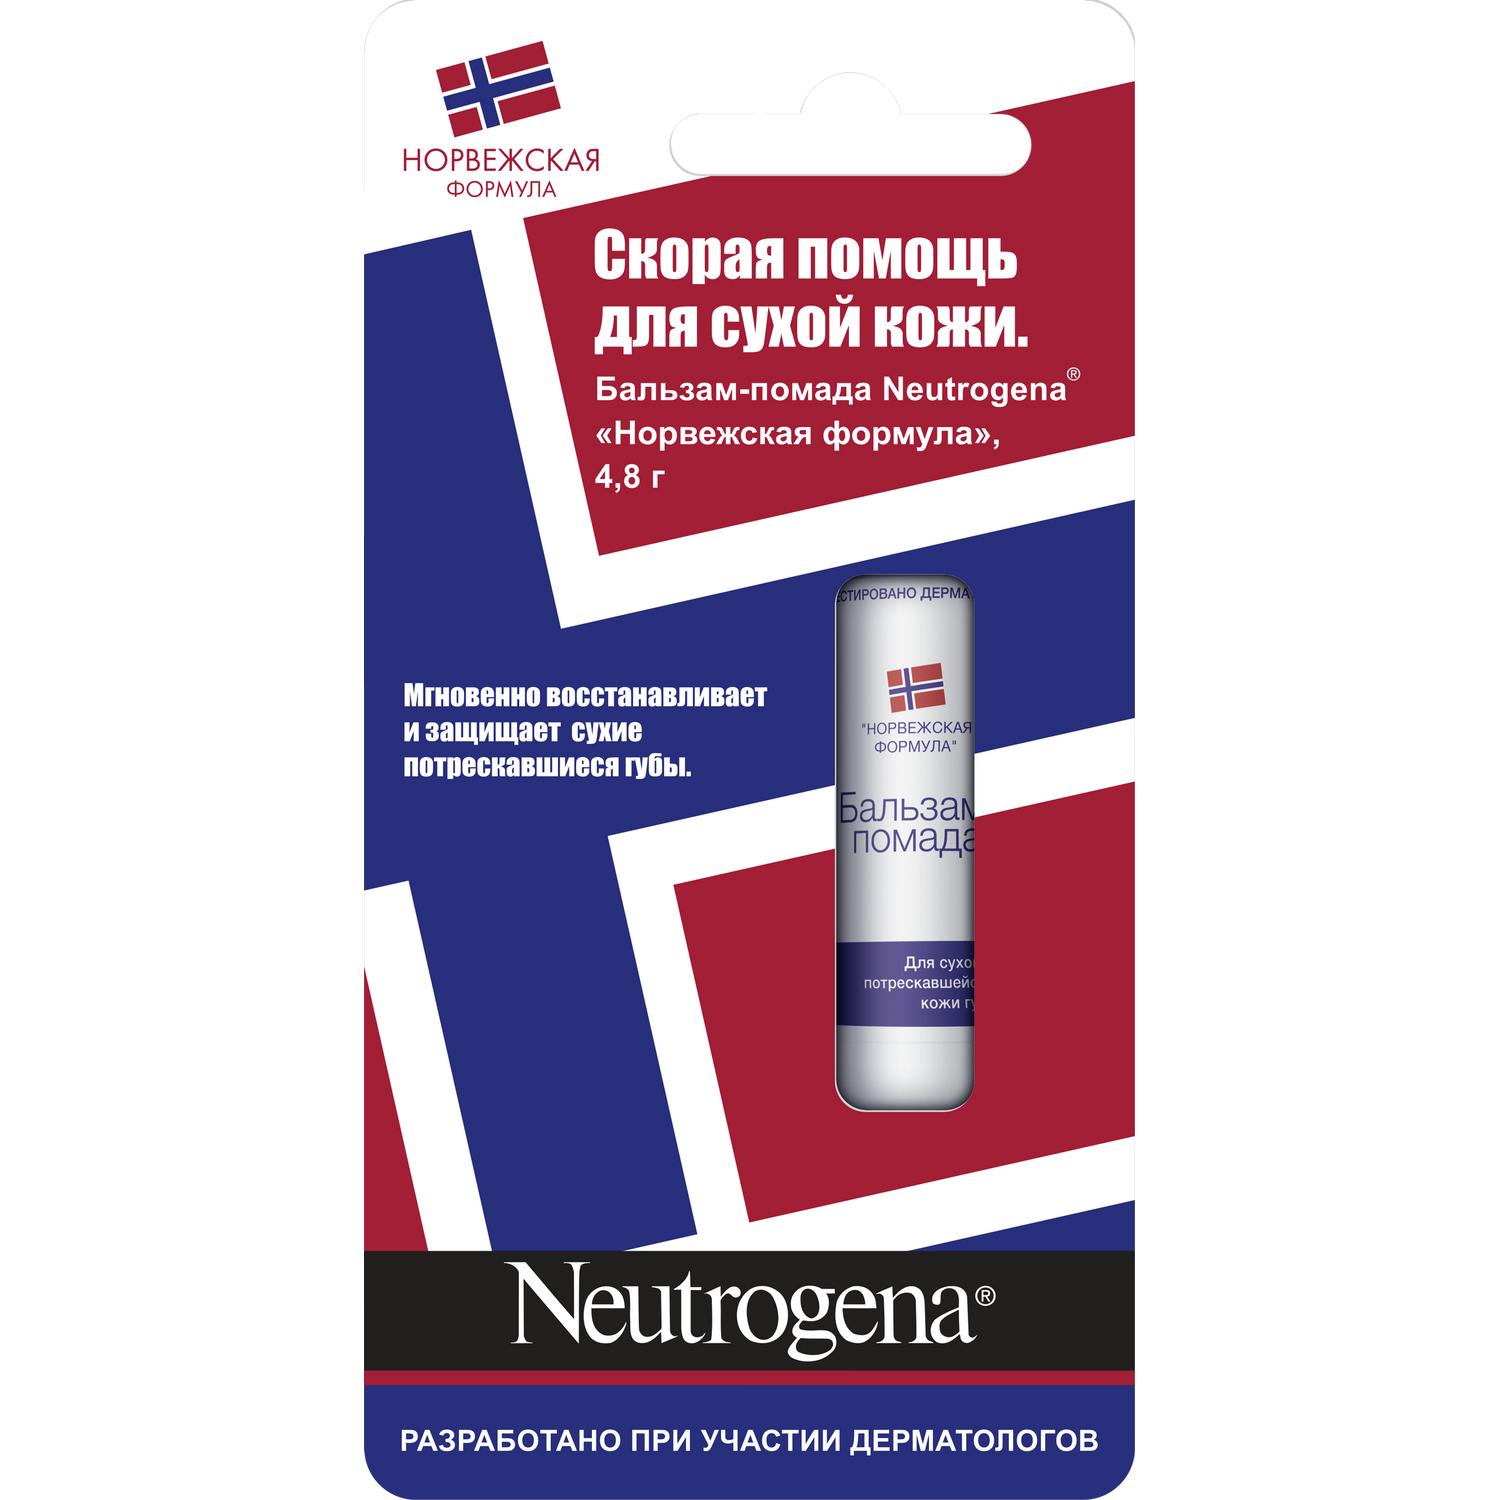 Купить Нетроджина бальзам для губ Норвежская формула 4, 8г, Johnson & Johnson